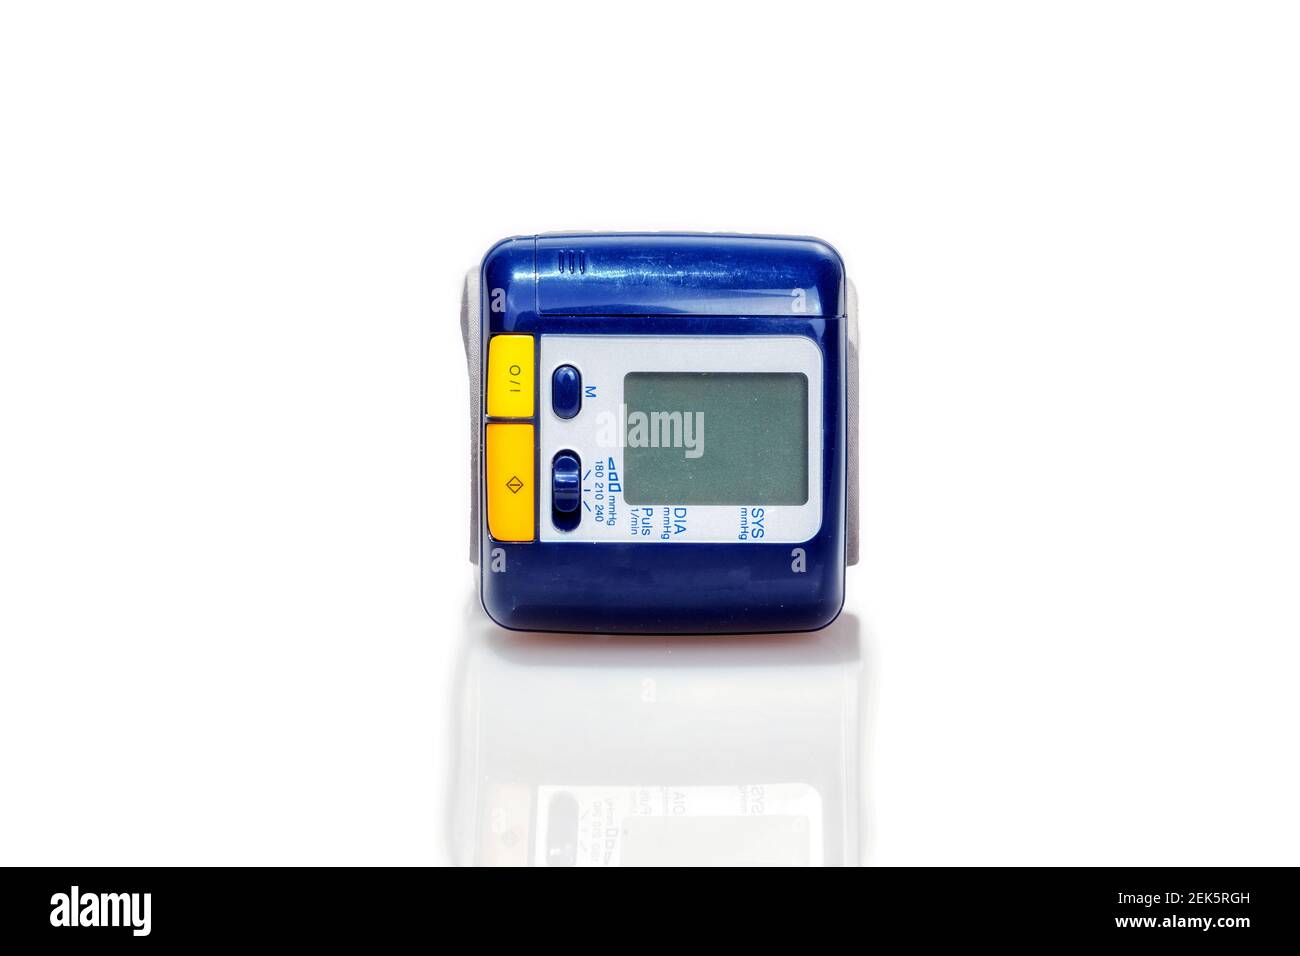 Moniteur de pression artérielle numérique LCD sur poignet avec moniteur de fréquence cardiaque Banque D'Images